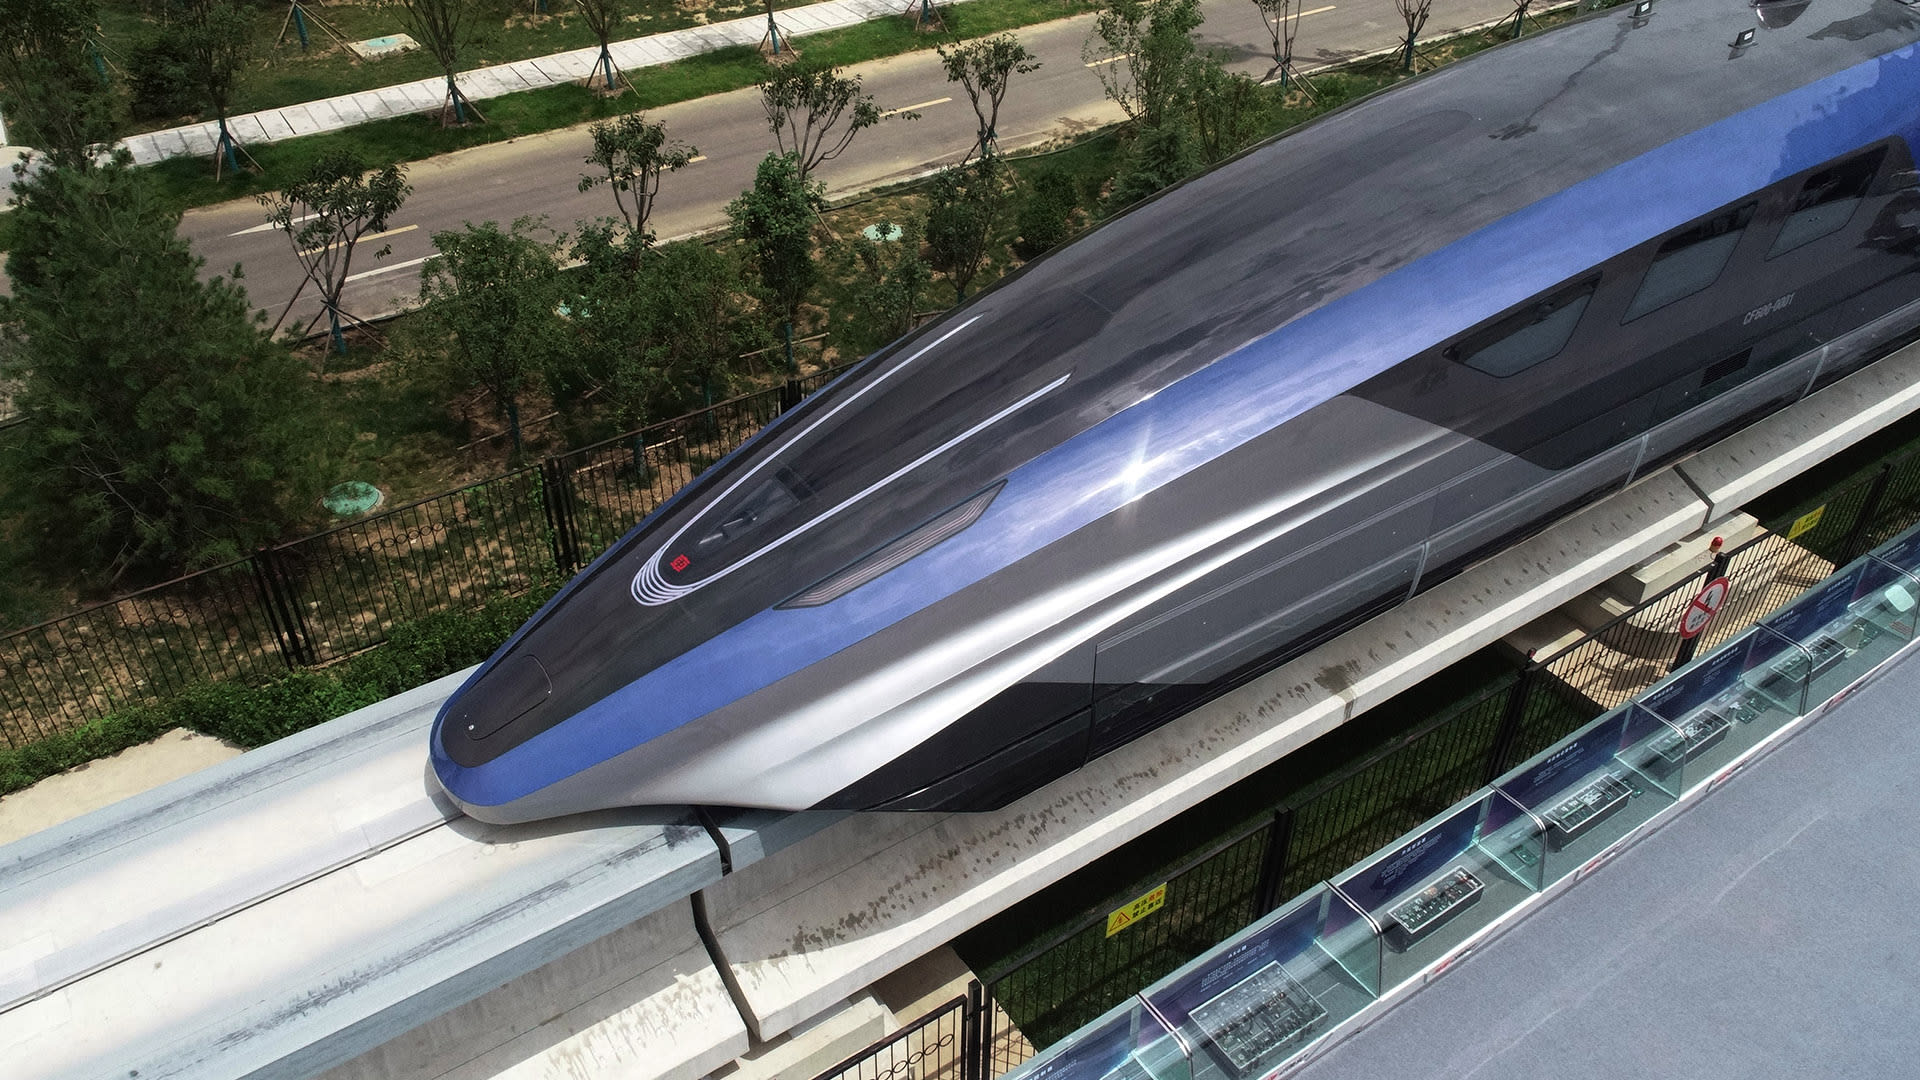 Cesta ze Šanghaje do Šen-čenu se s novým vlakem může zkrátit na pouhých 2,5 hodiny